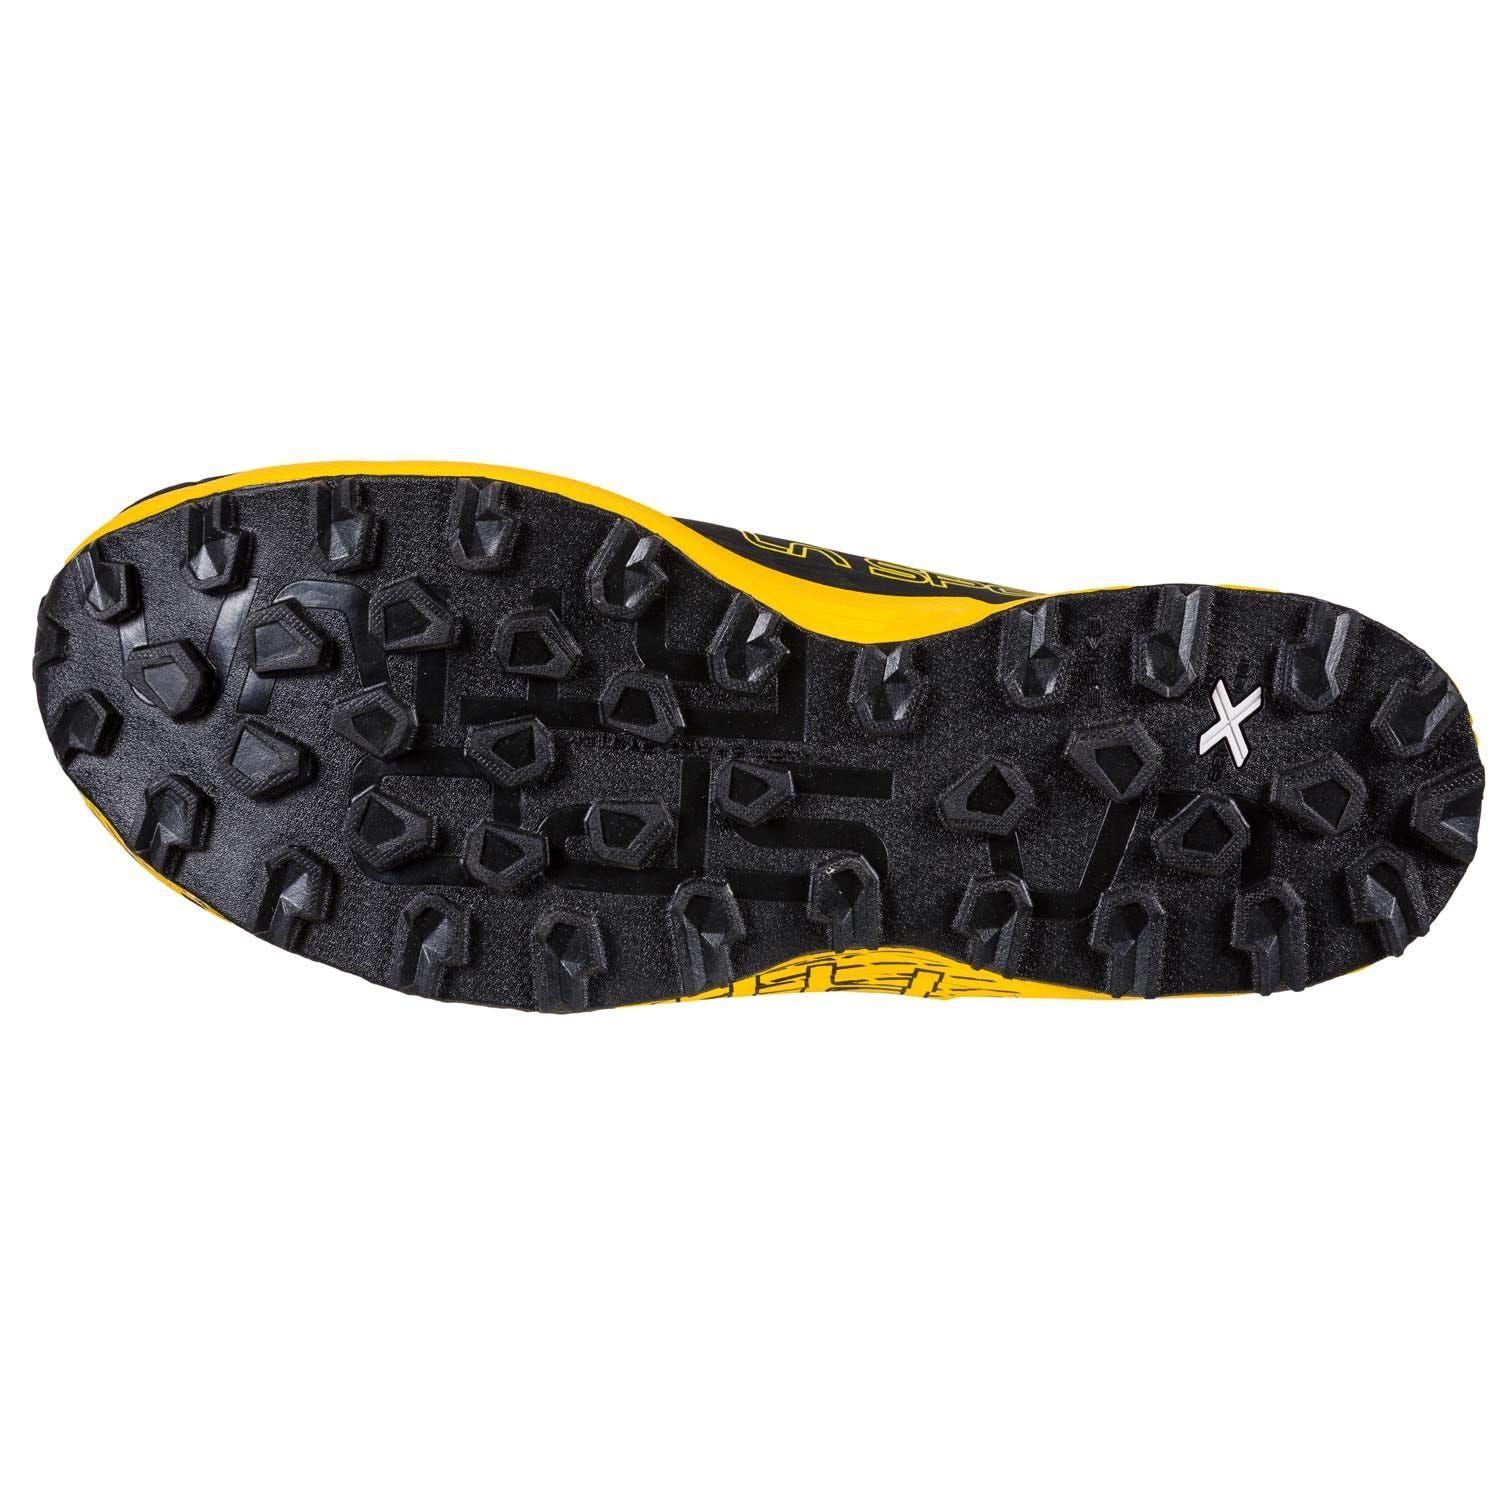 La Sportiva | Scarpe Cyklon Cross GTX Uomo Black/Yellow - Fabbrica Ski Sises